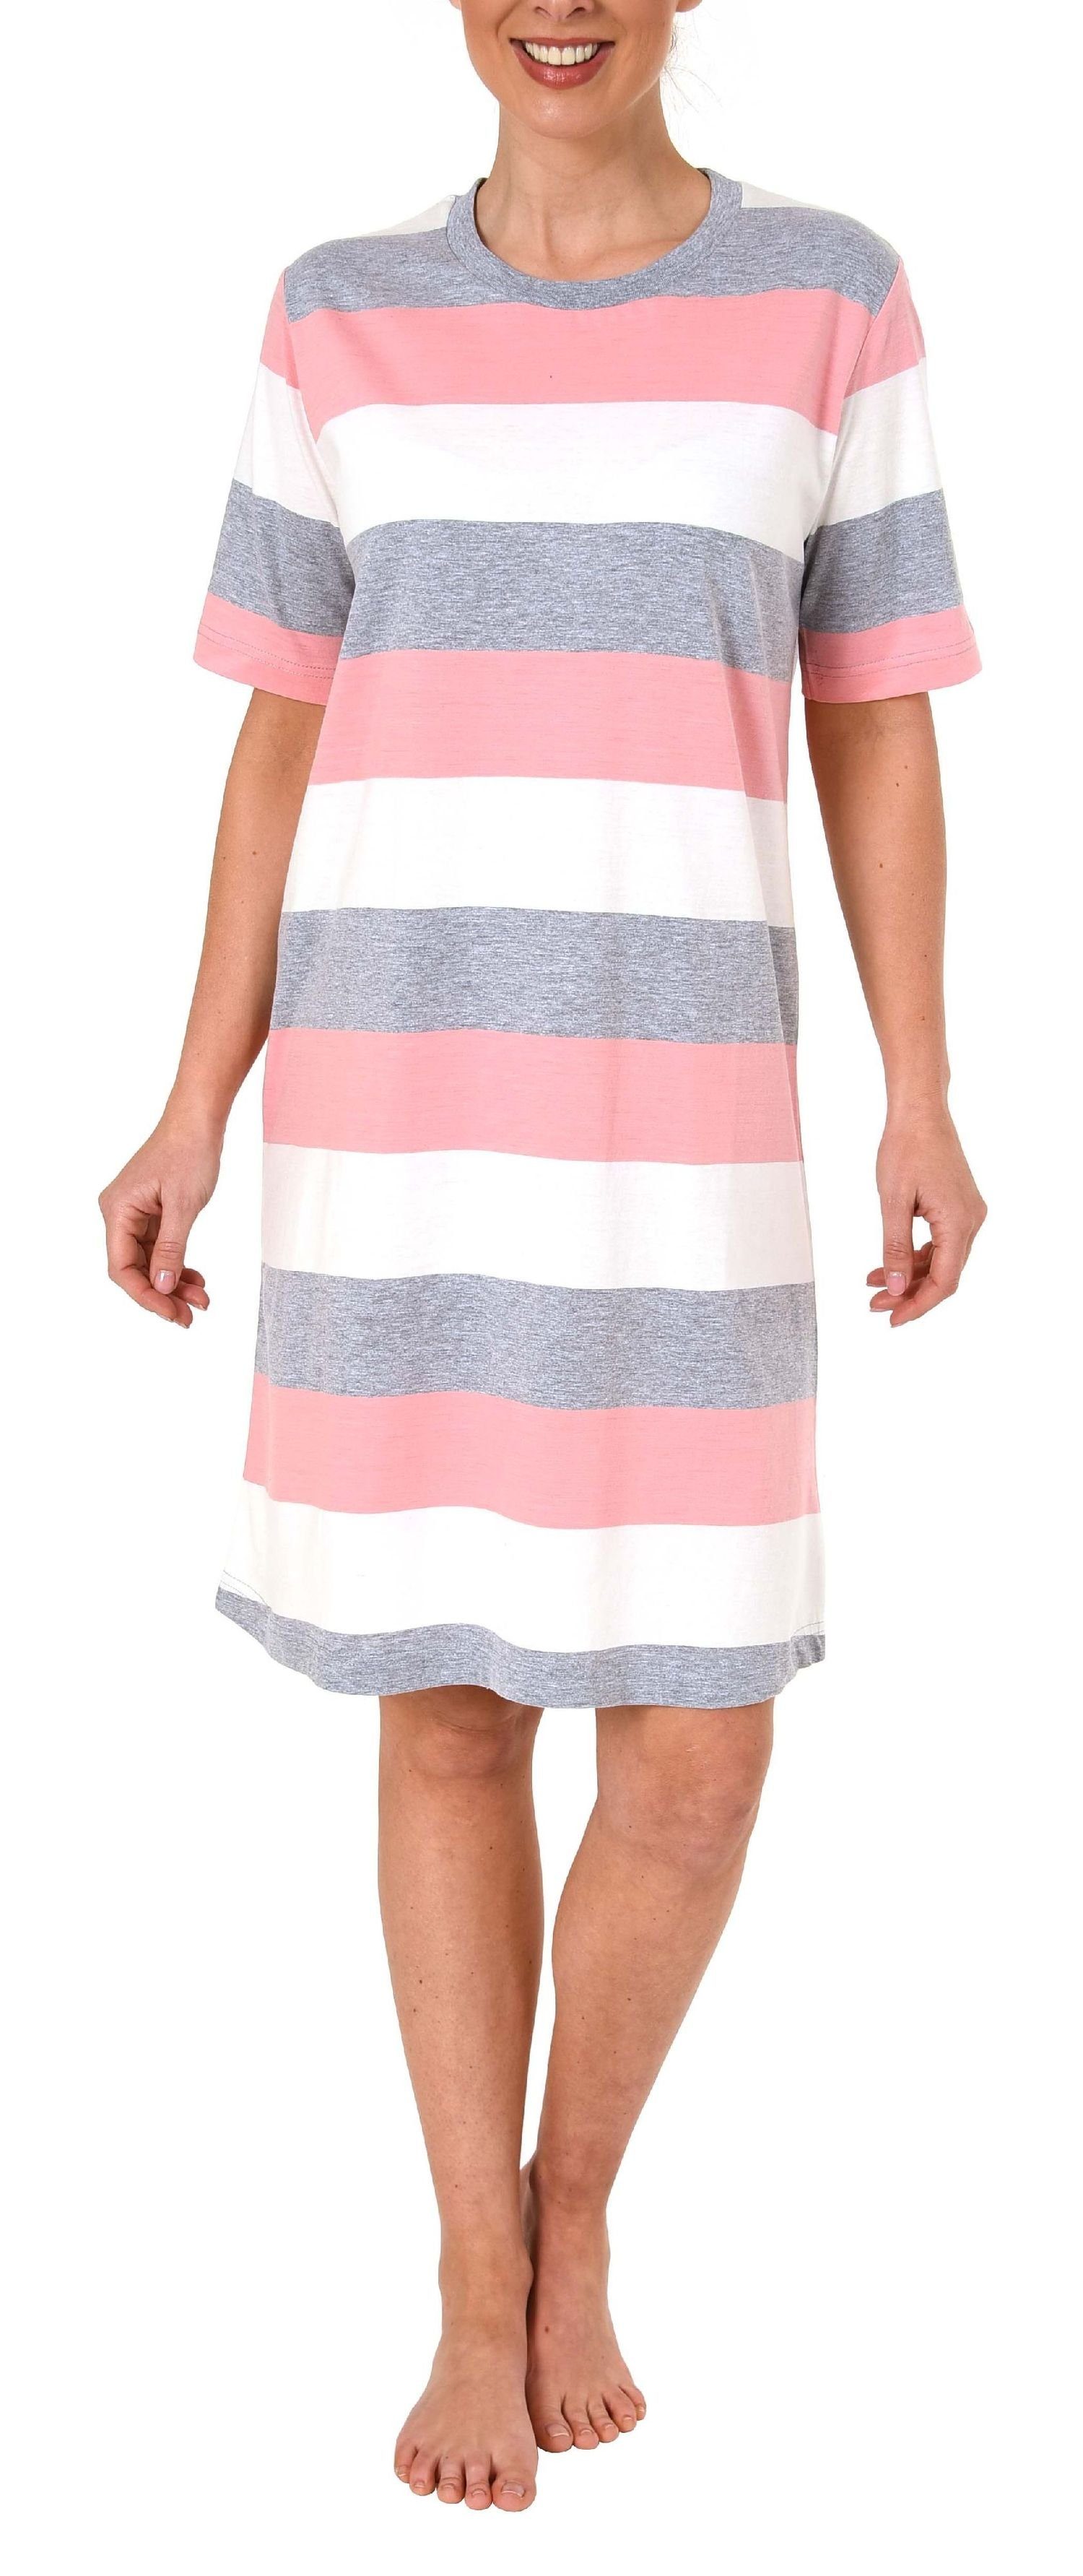 Normann Nachthemd Damen Nachthemd kurzarm mit Block Streifen Querstreifen rosa